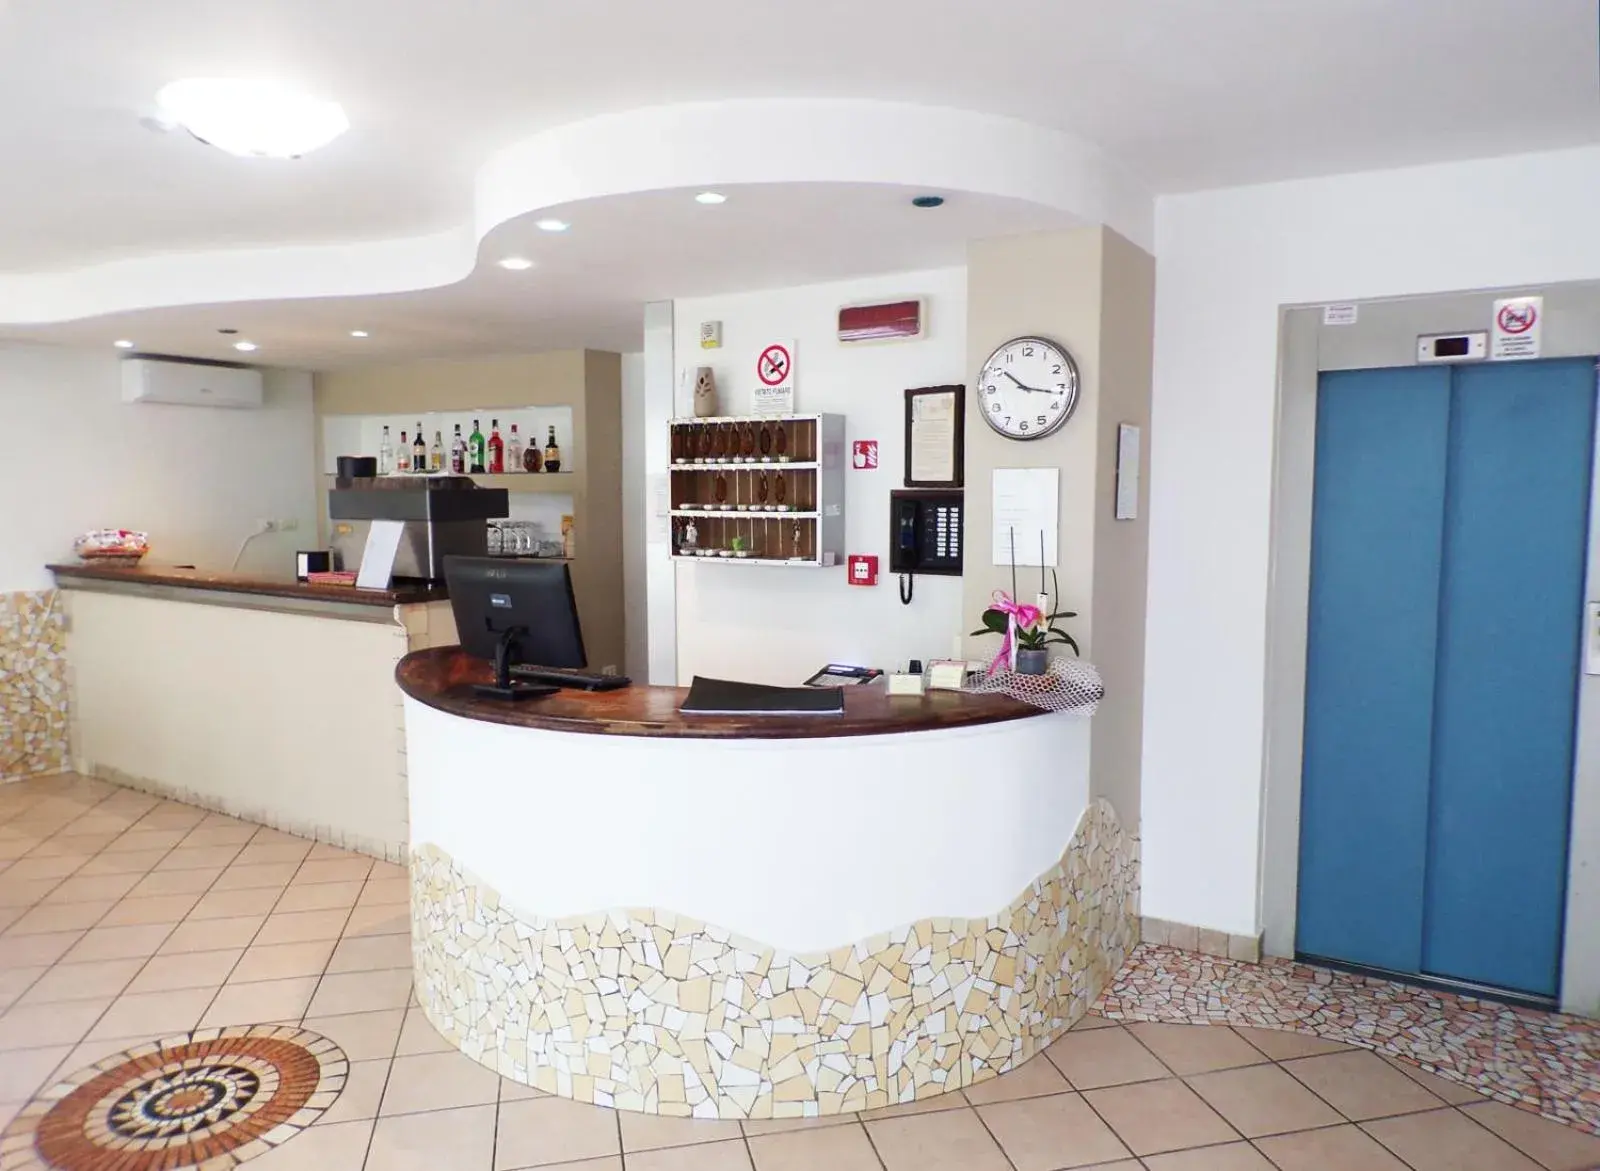 Lounge or bar, Lobby/Reception in Hotel Frida